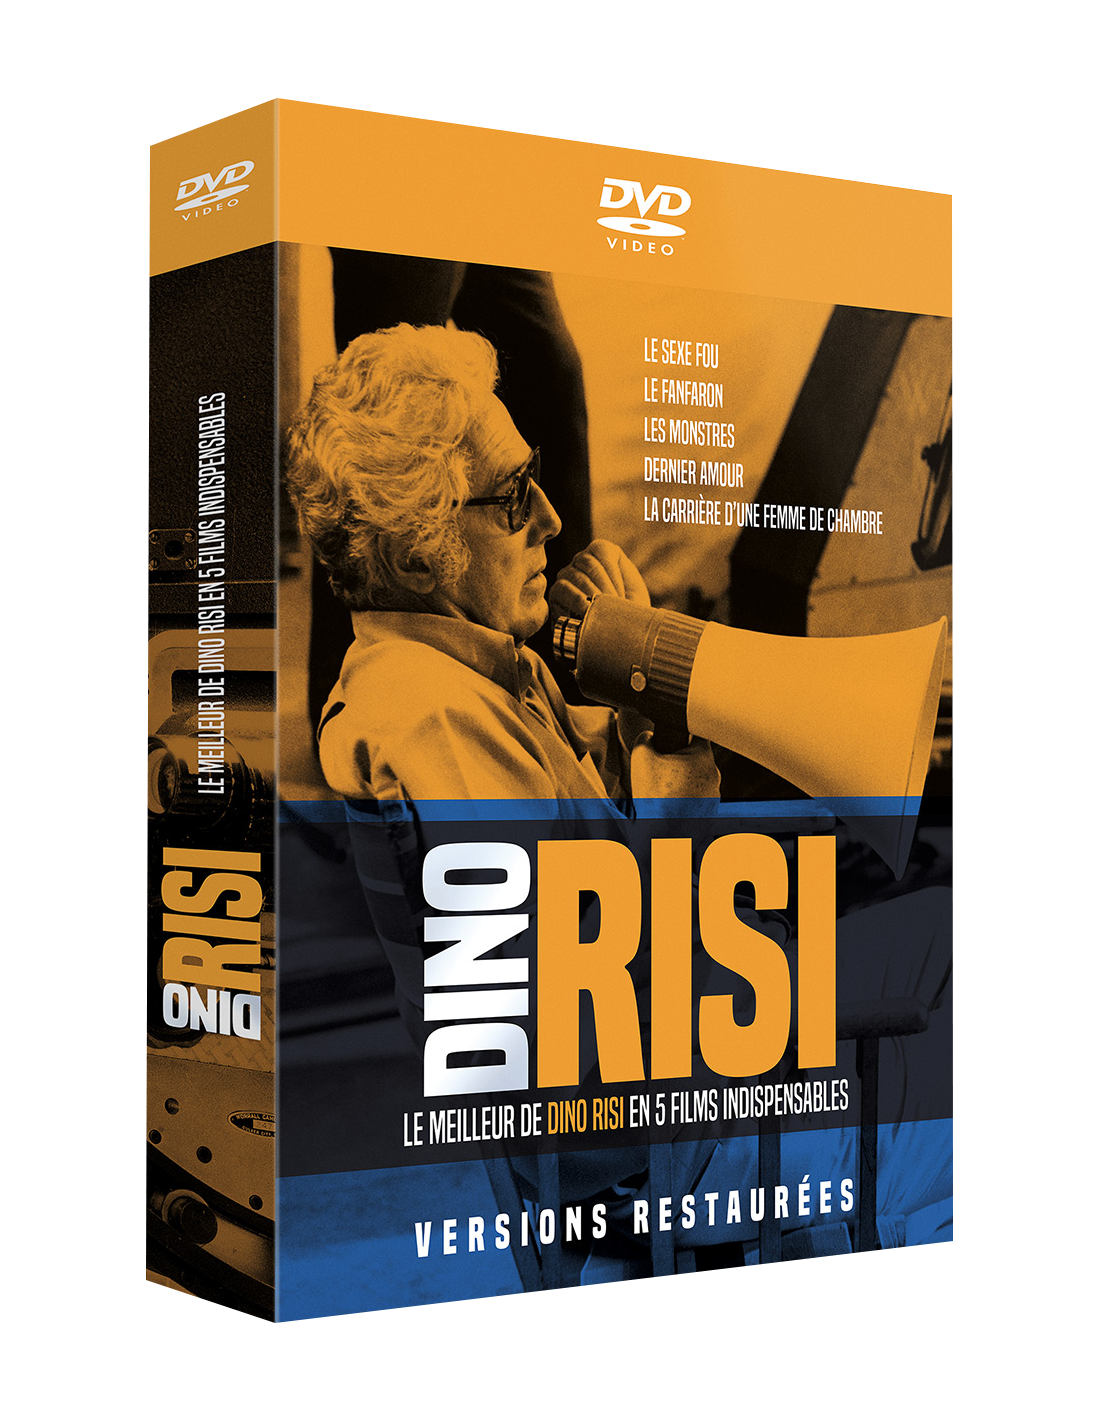 Coffret dvd - Dino Risi